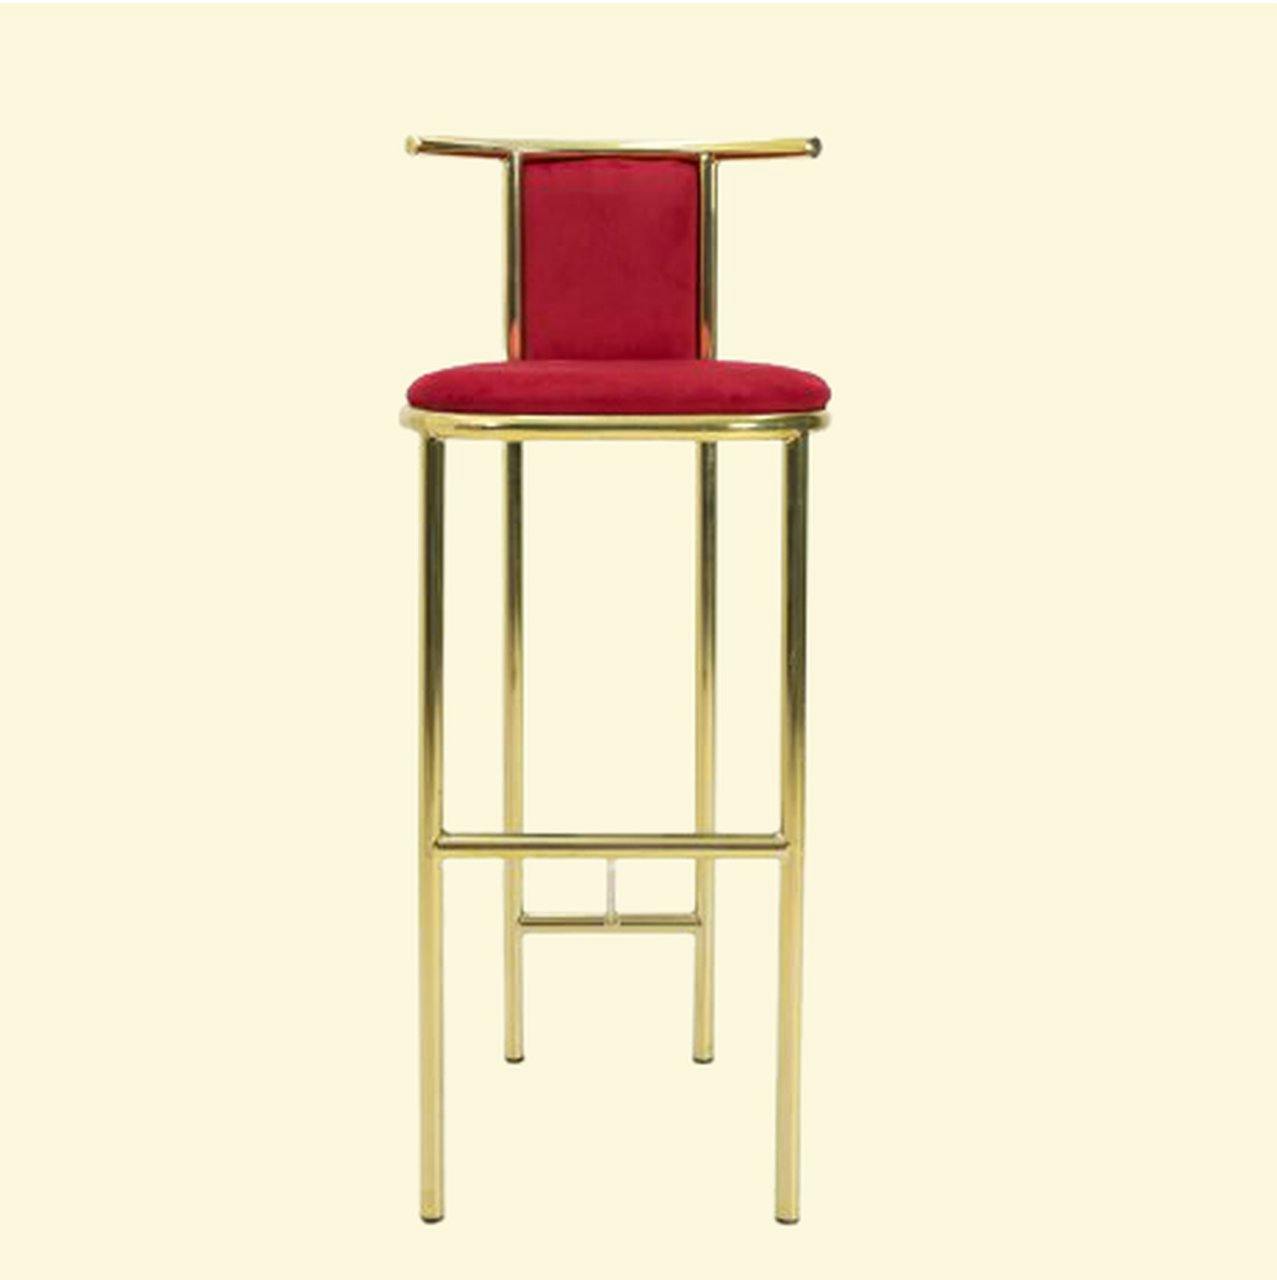 Arne Jacobsen Bar stools